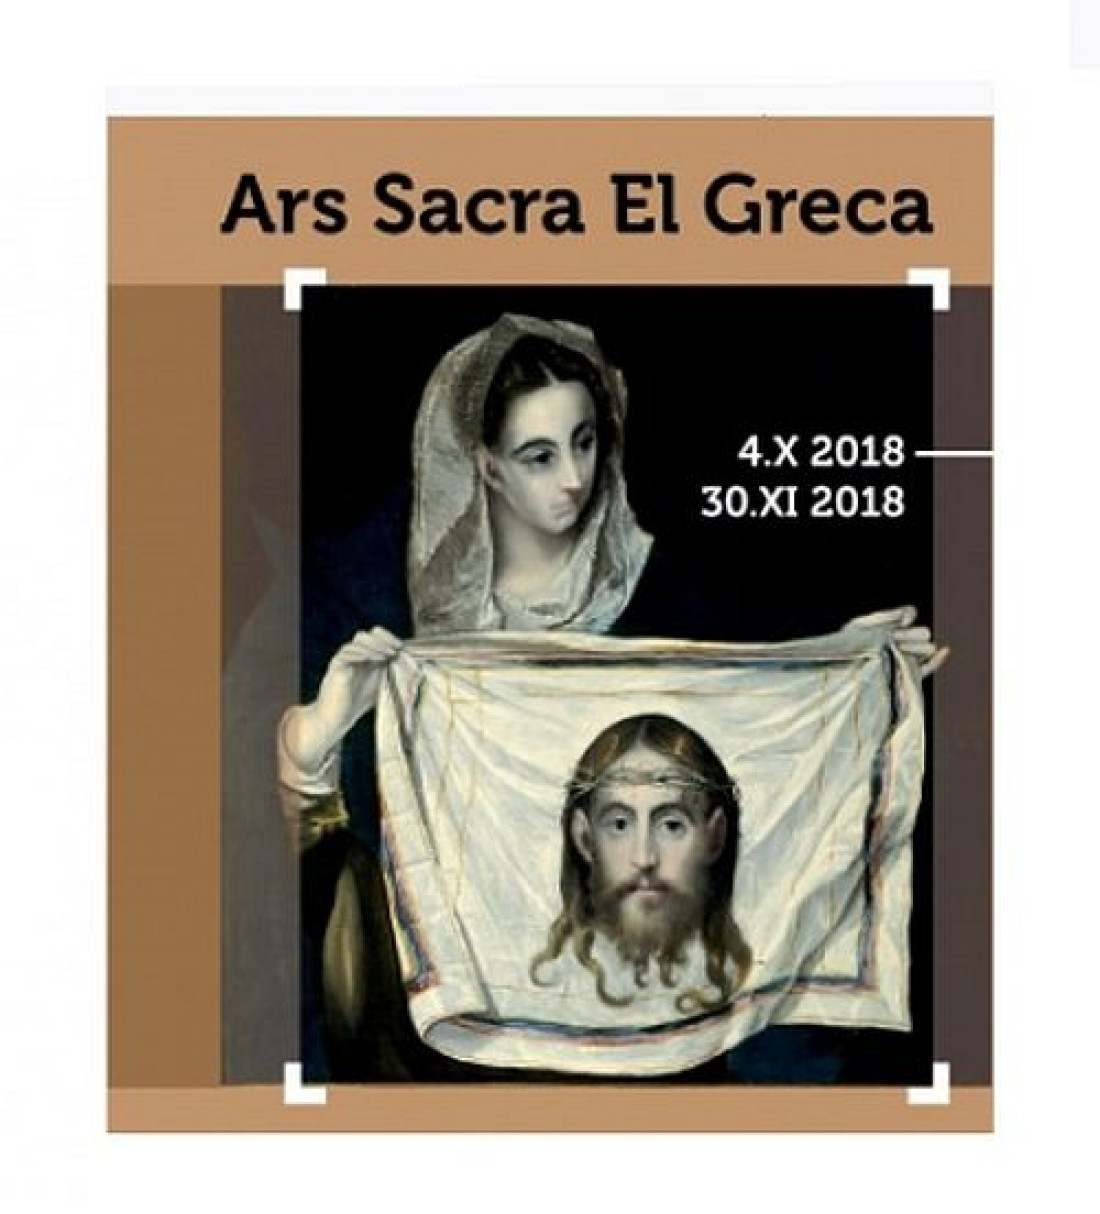 Farby KABE partnerem wystawy EL GRECO "Ars Sacra El Greca"